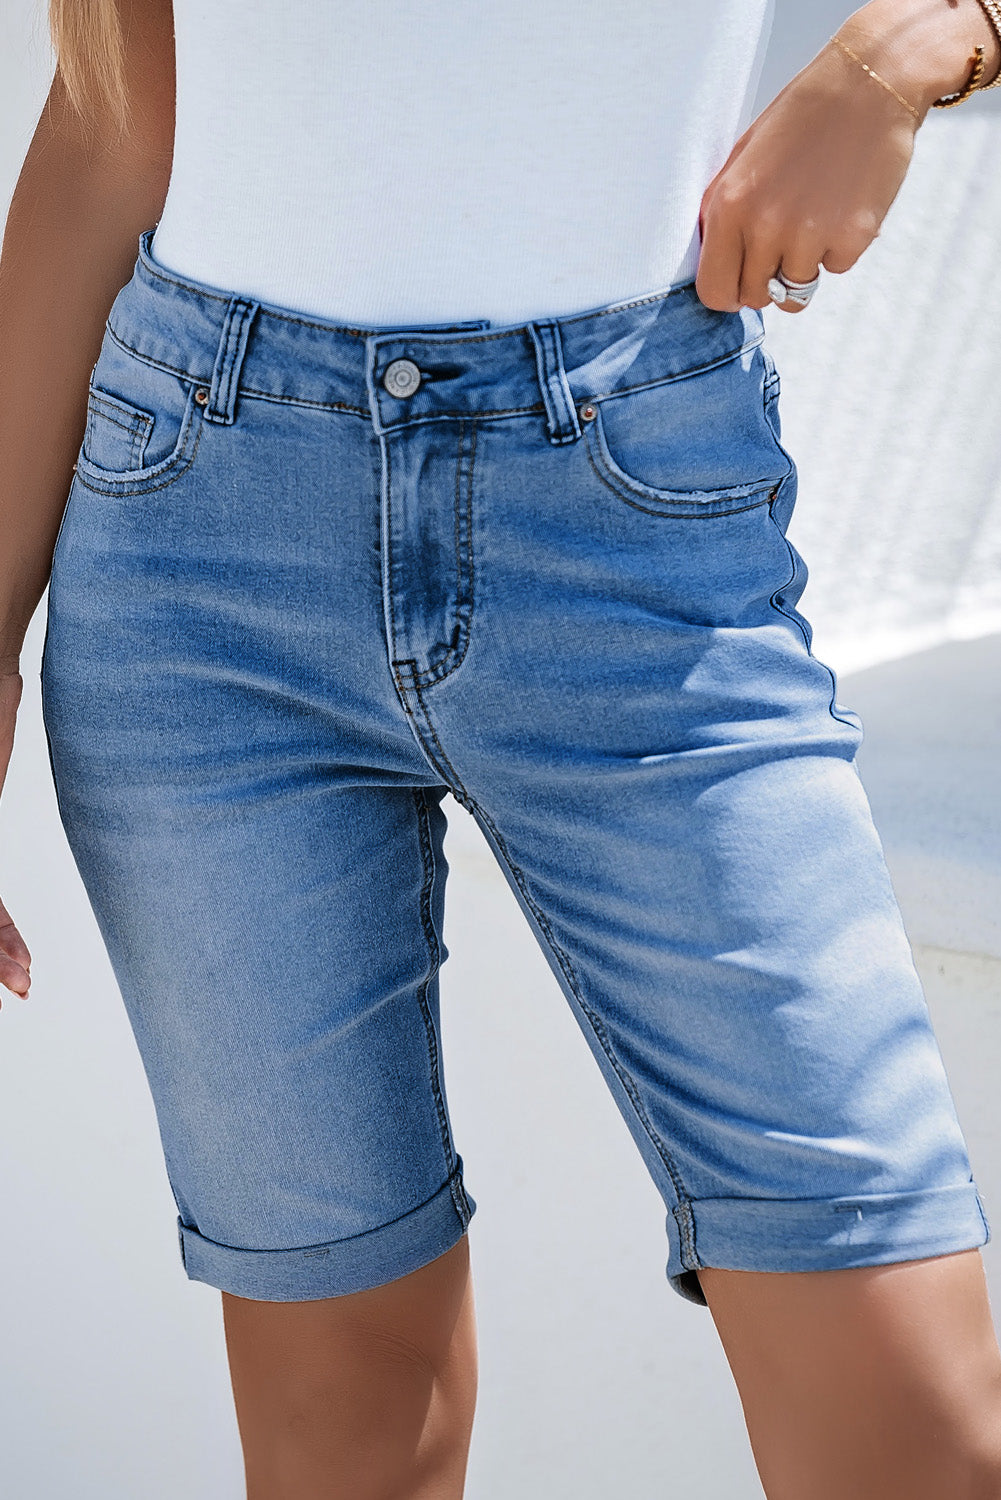 Jeans corti bermuda con bordo arrotolato, lavaggio acido, colore azzurro cielo